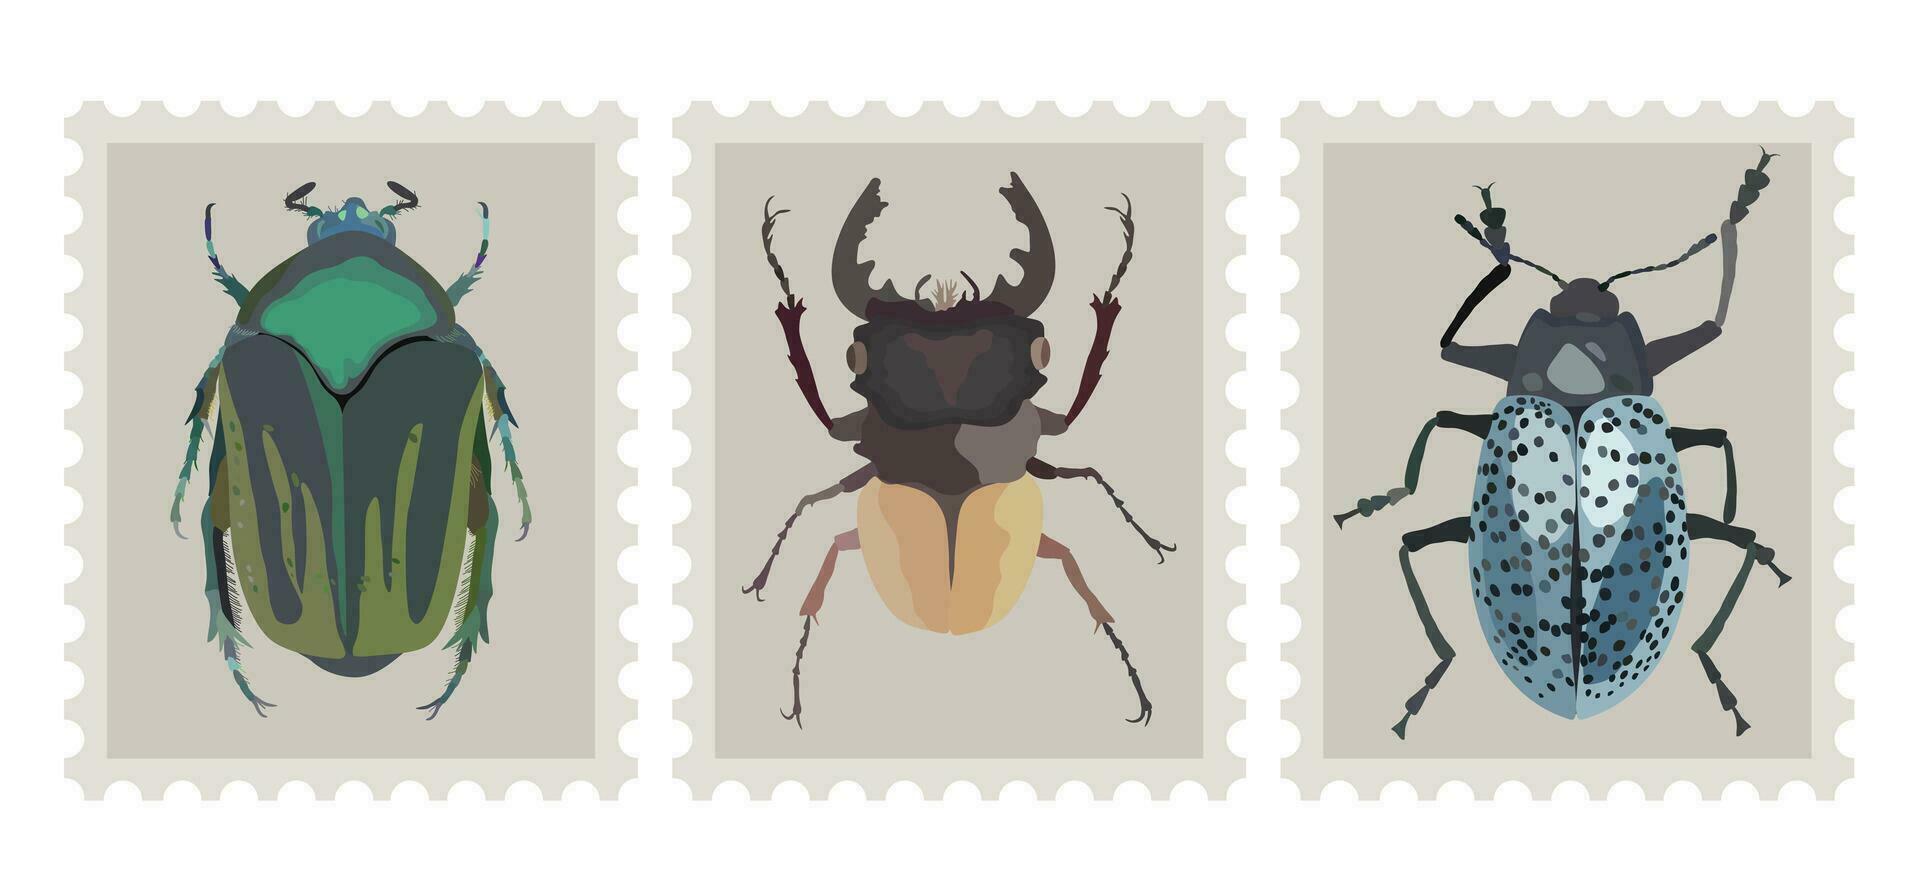 postal carimbo conjunto com insetos. três selos postais com vários besouros. vetor isolado ilustração. filatélico conceito